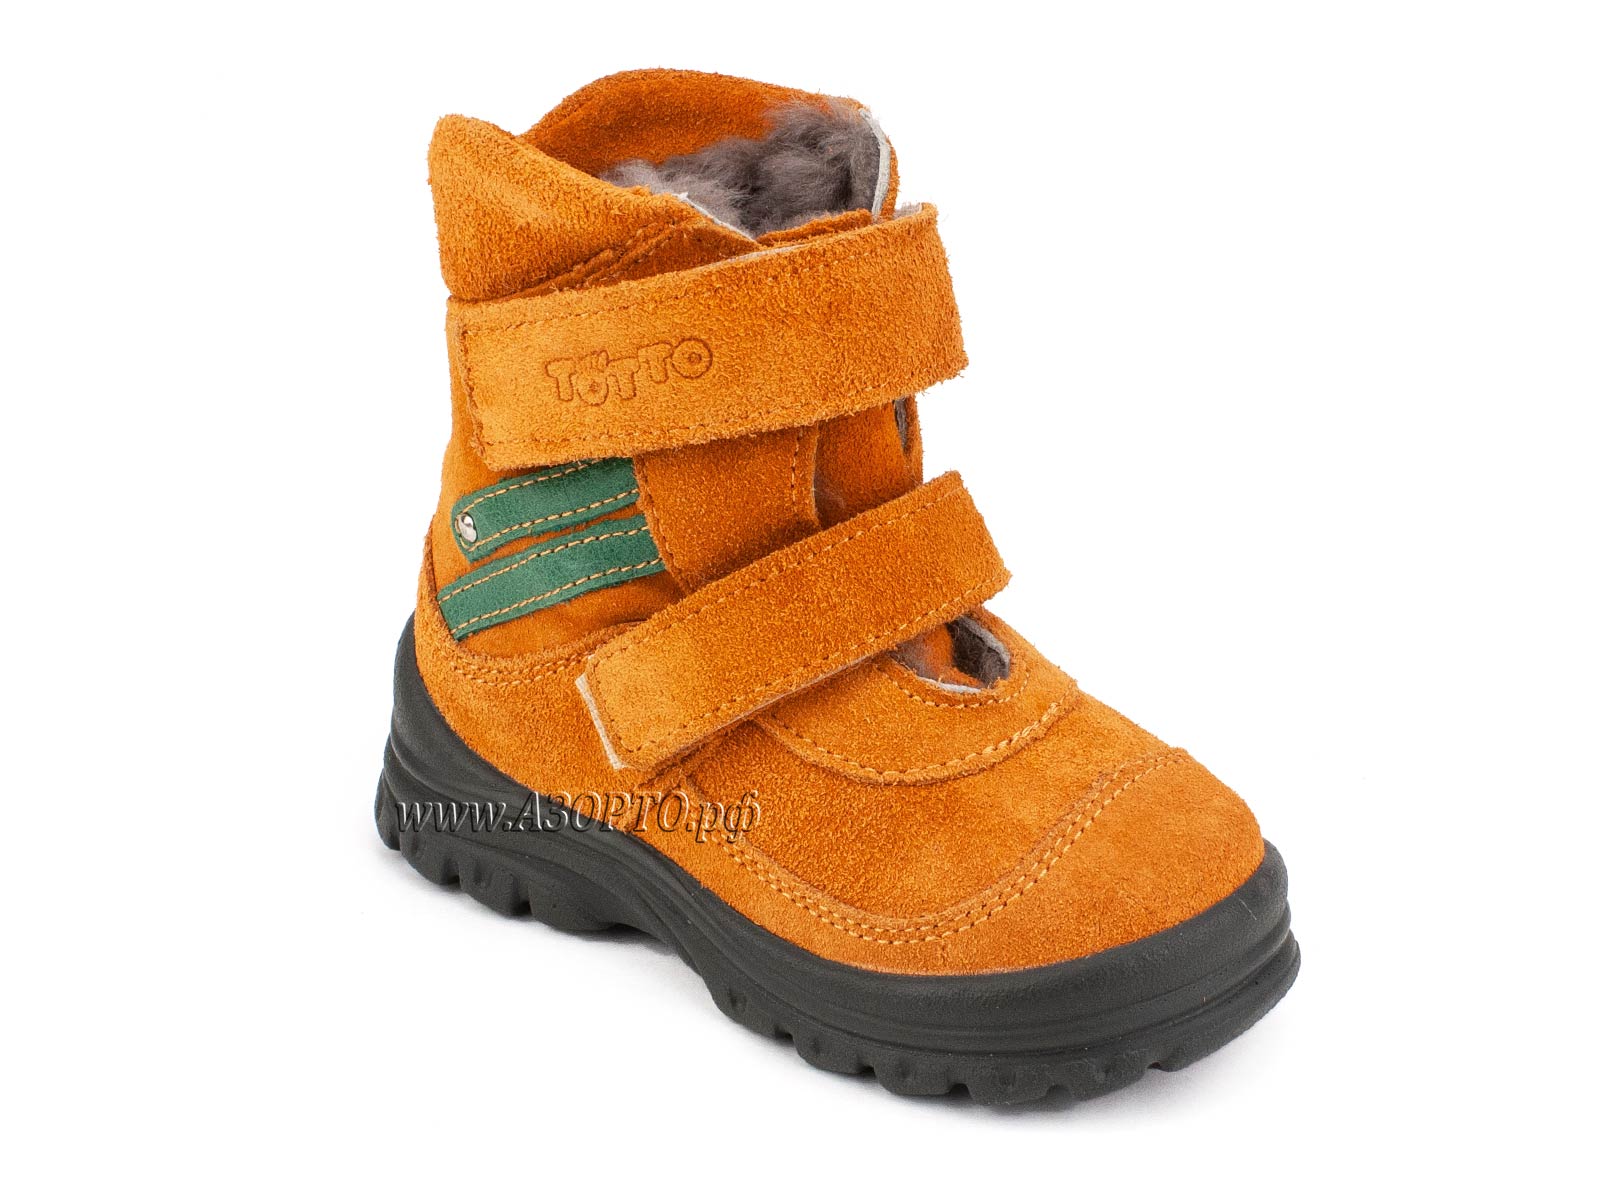 203-85,044 Тотто (Totto), ботинки зимние, оранжевый, зеленый, натуральный мех, замша.